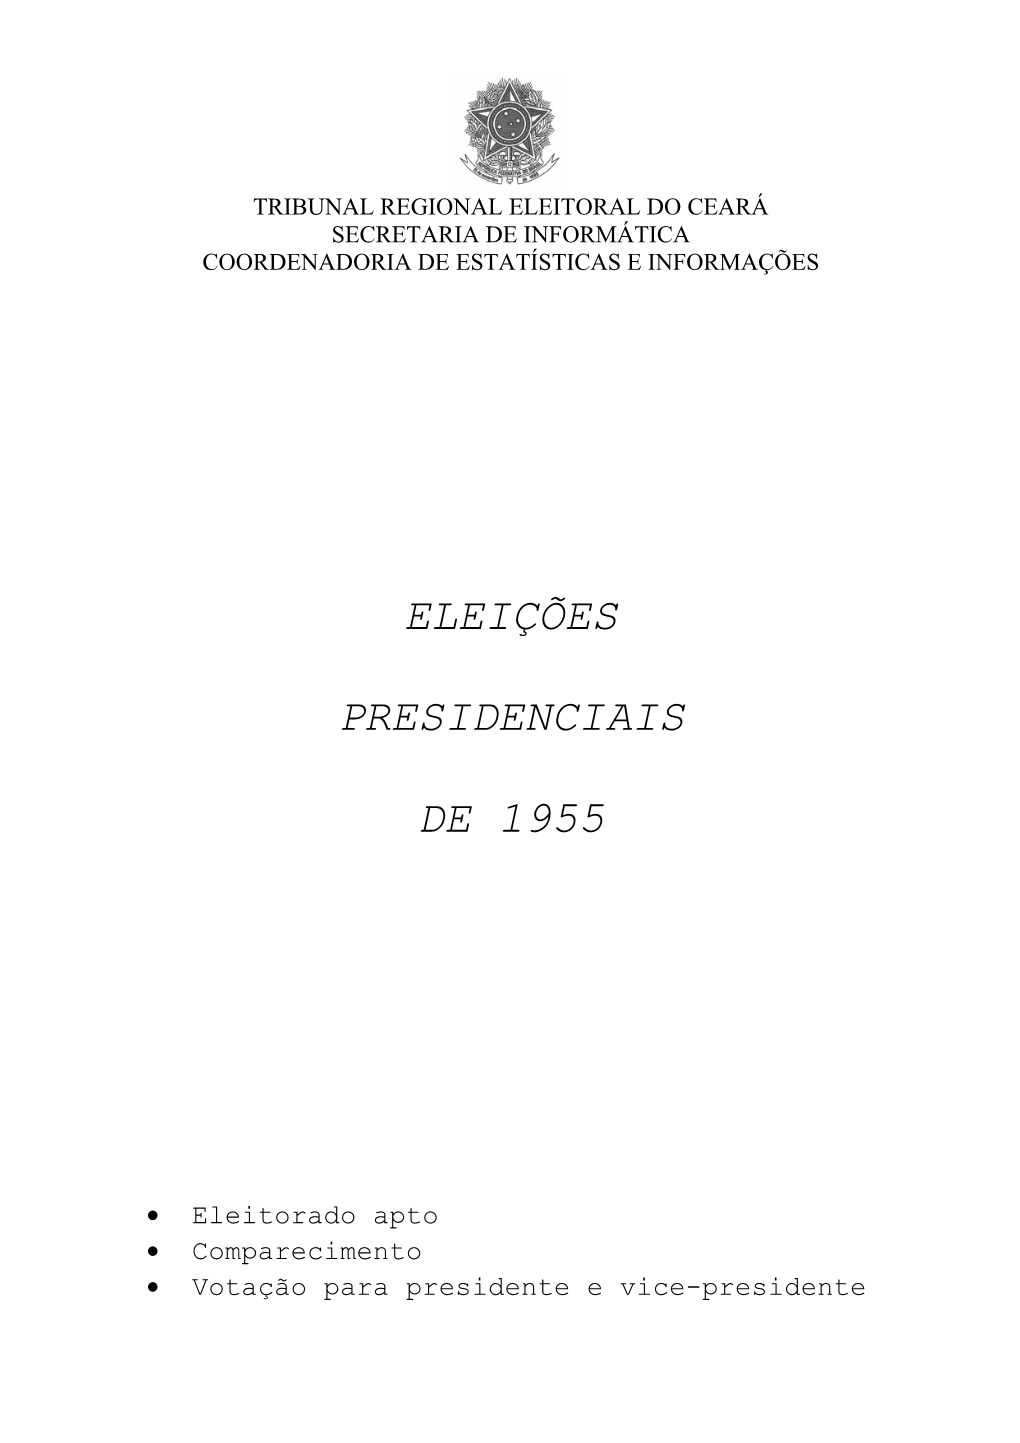 Eleições Presidenciais De 1955 Cargo: Presidente